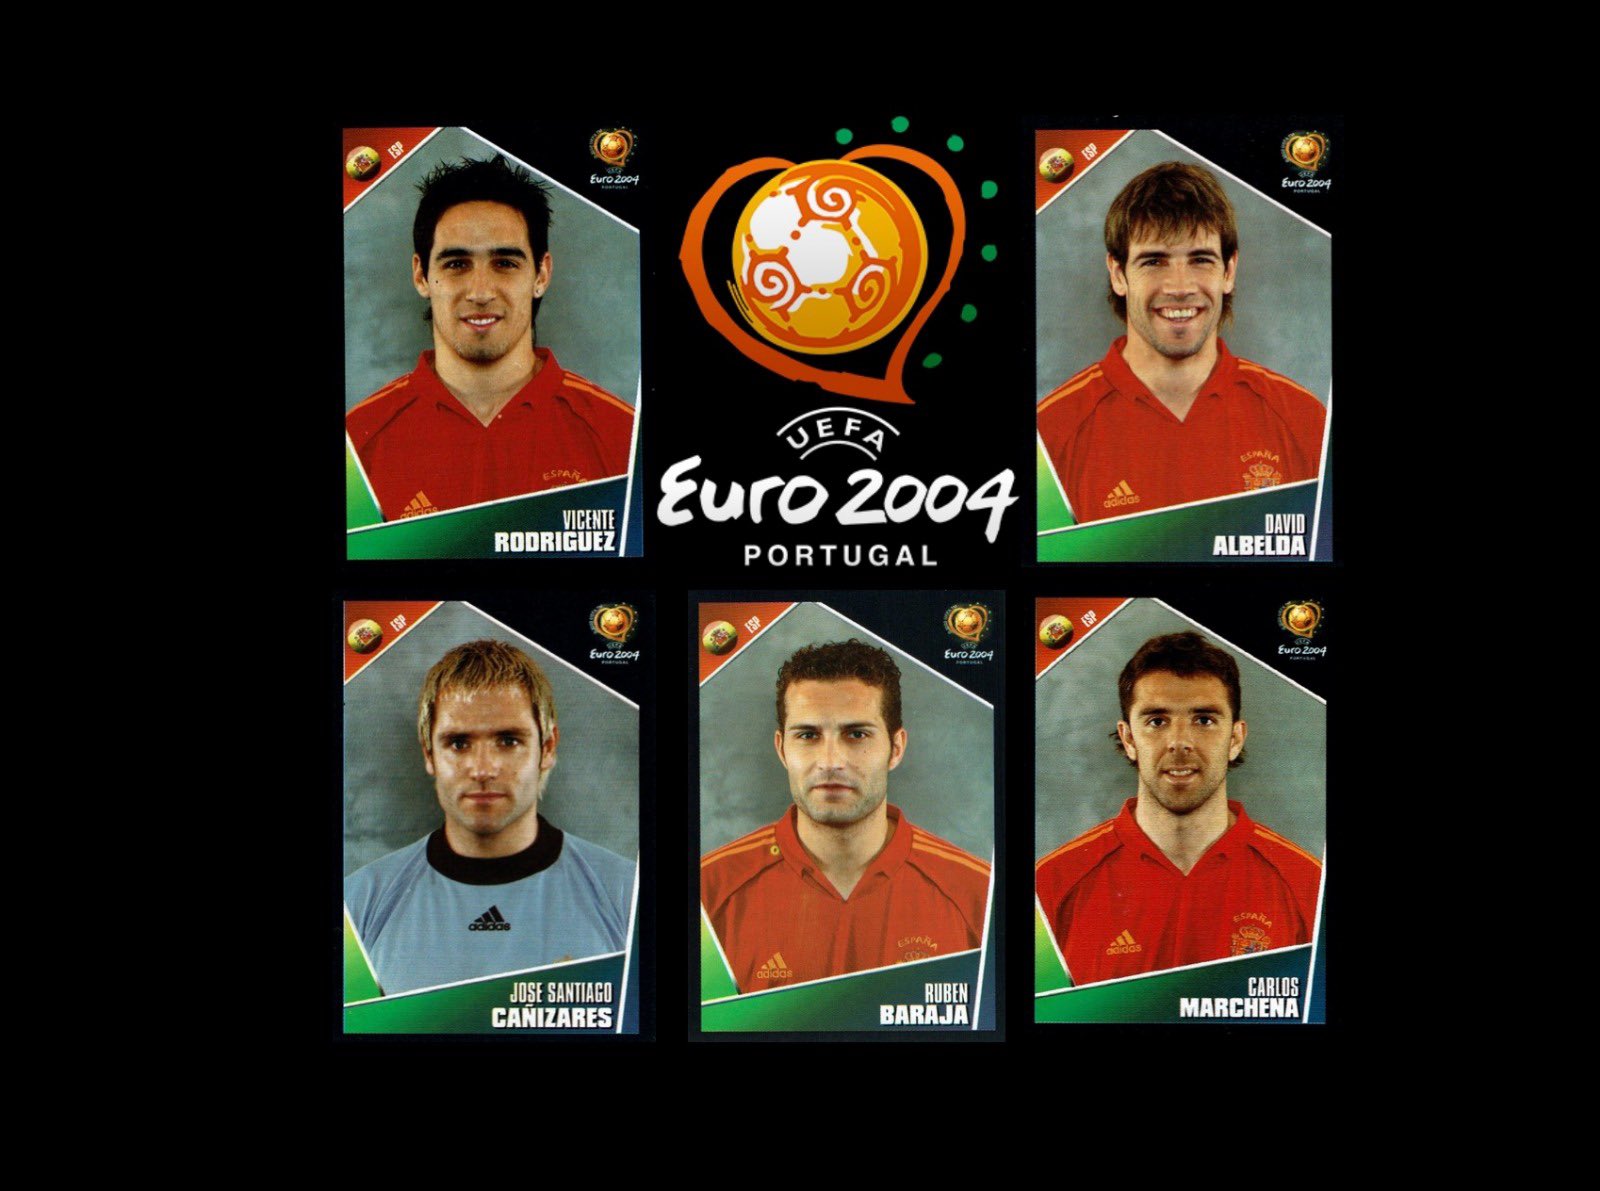 Colección VCF on Twitter: "🇵🇹 La Eurocopa de Portugal en 2004 contó con participación de cinco valencianistas, todos con la selección que acababan de ganar Liga y UEFA. 👇🏼 En